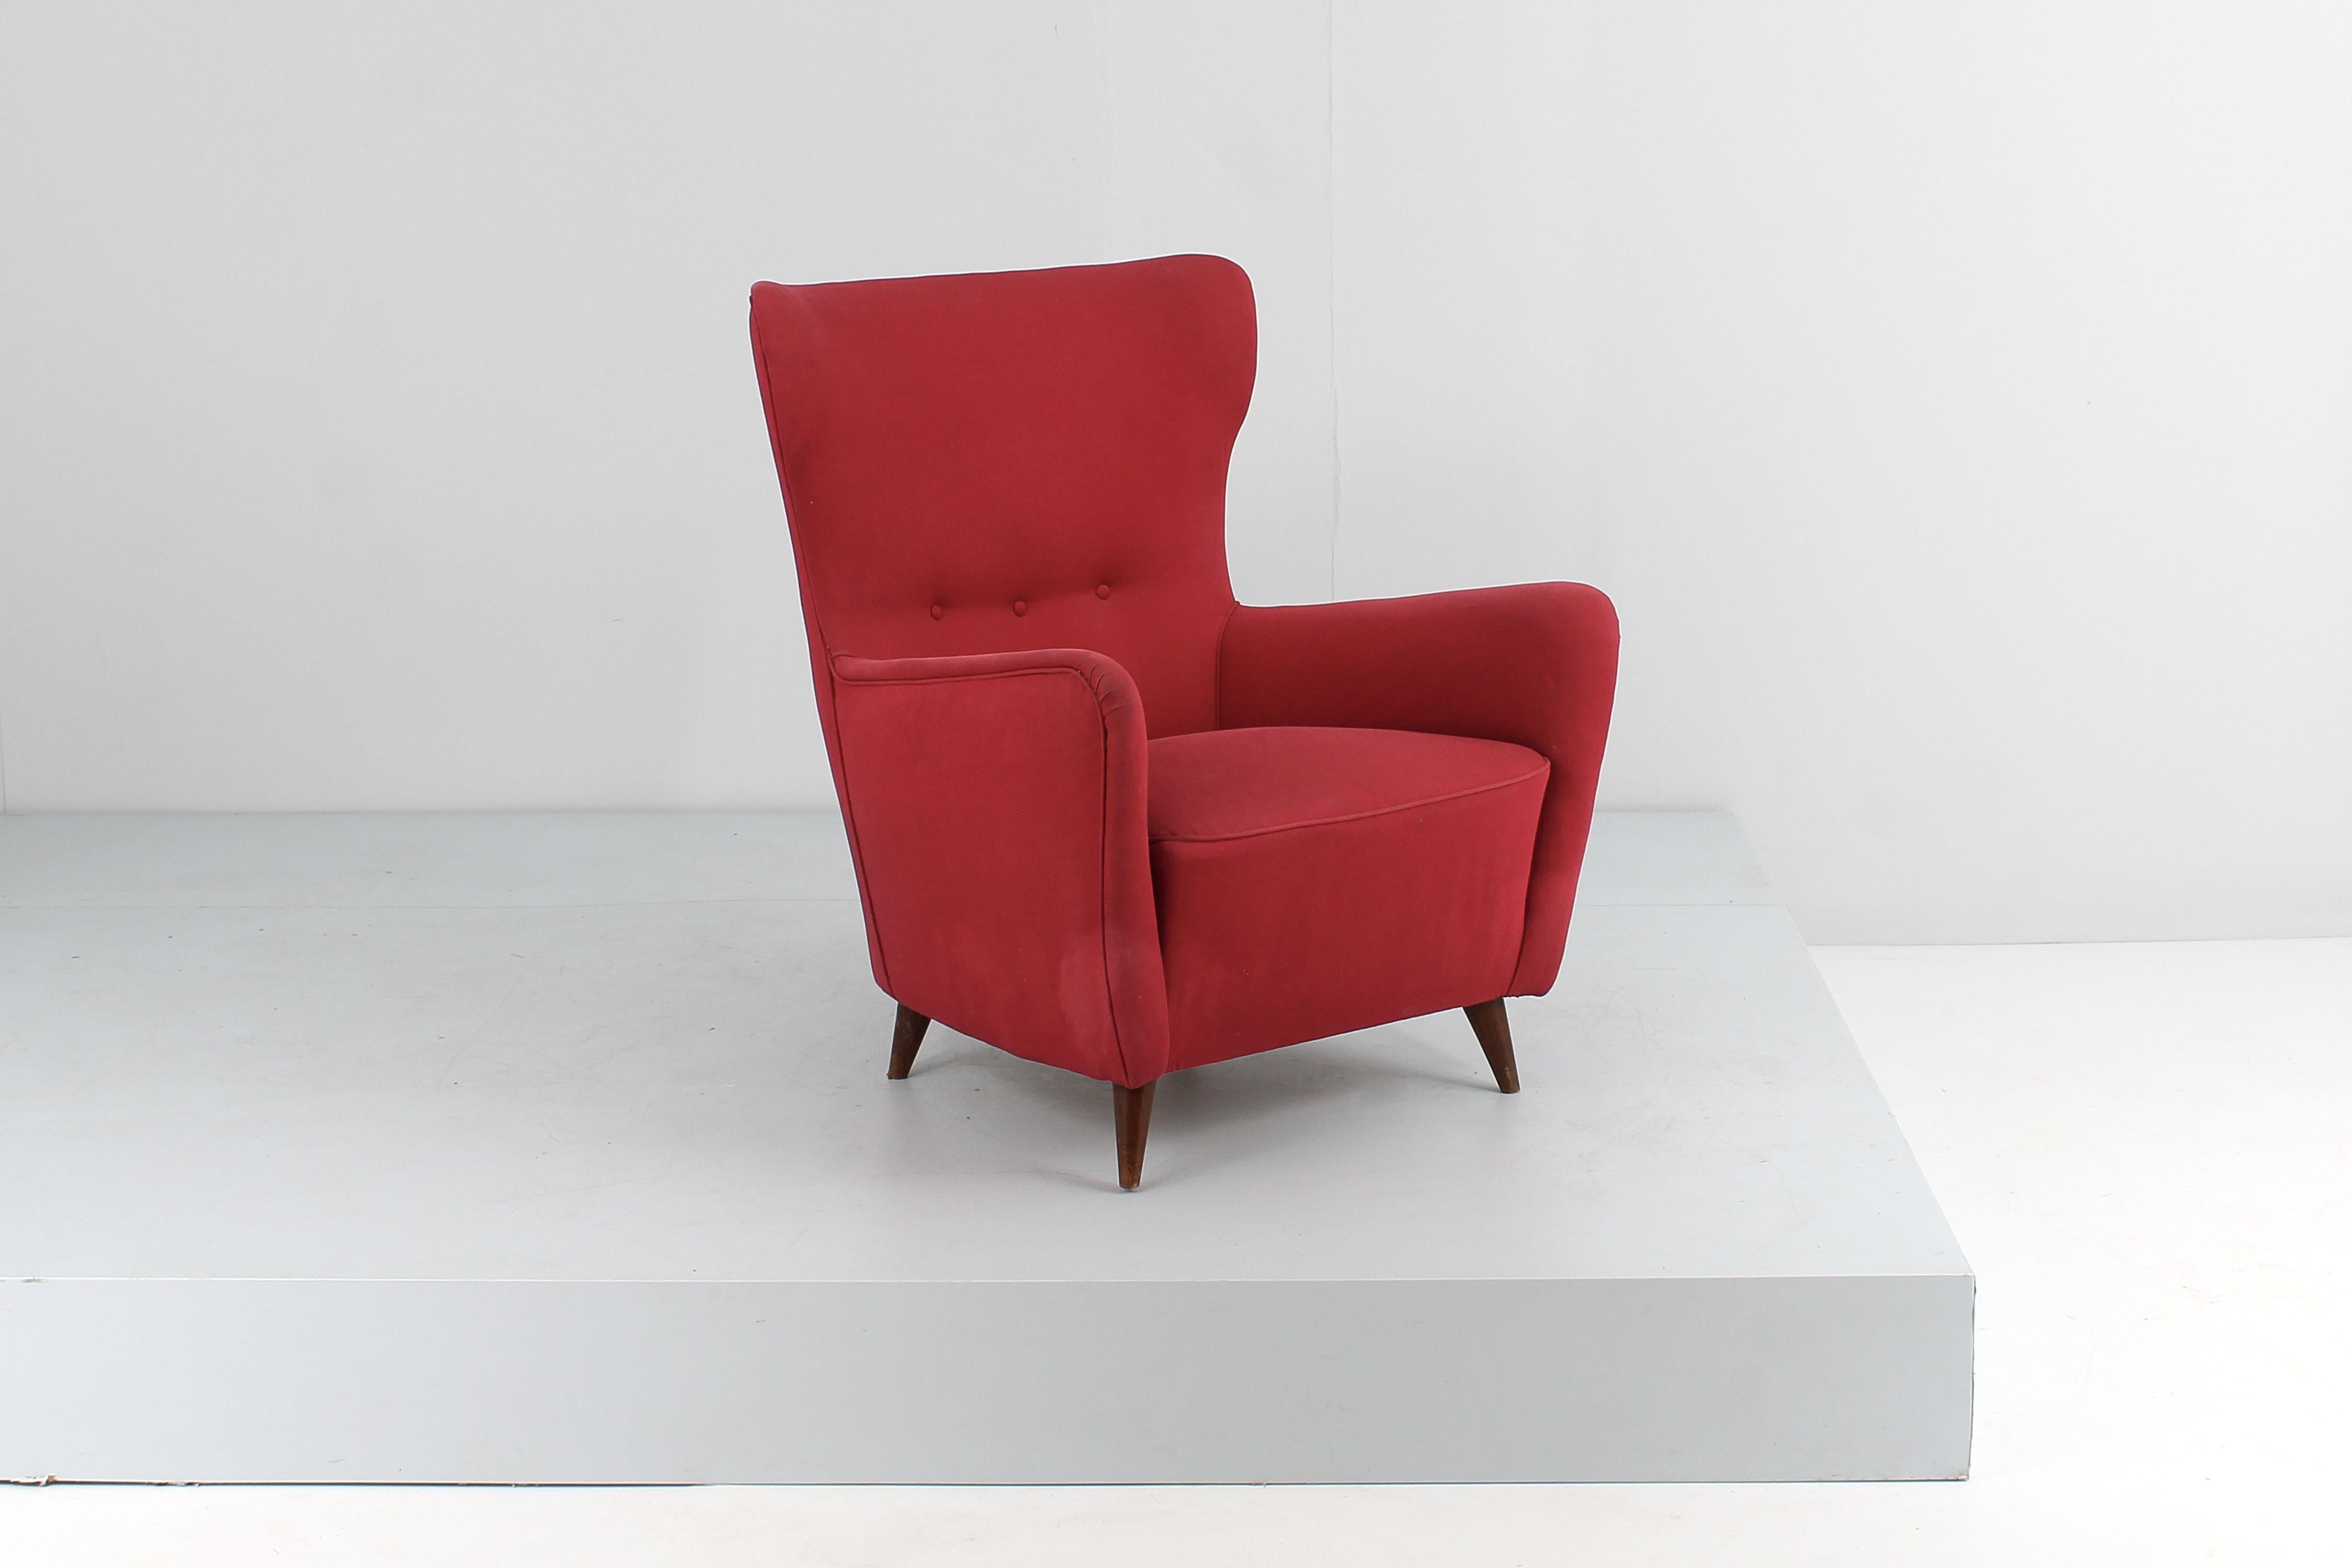 Sehr schöner Sessel mit Holzgestell, rotem Stoffbezug und konischen Holzfüßen. Giò Ponti-Stil, italienische Manifaktur in den 50er Jahren
Alters- und gebrauchsbedingte Abnutzungserscheinungen.

Zum Verkauf steht auch ein Sessel desselben Stils,